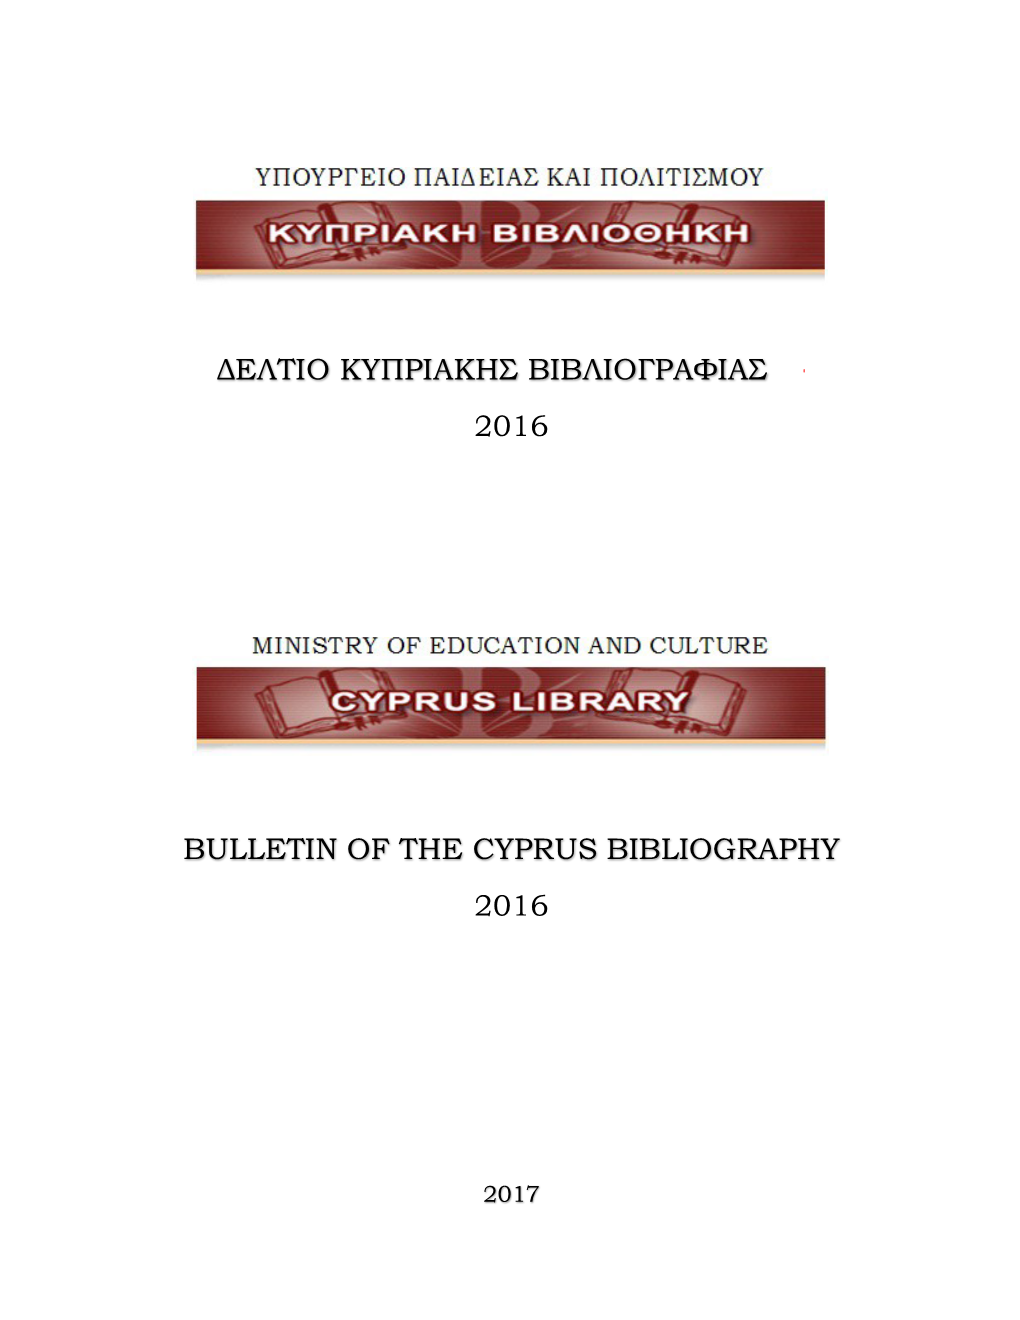 Δελτιο Κυπριακης Βιβλιογραφιας 2016 Bulletin of the Cyprus B Bl Ap Y 2016